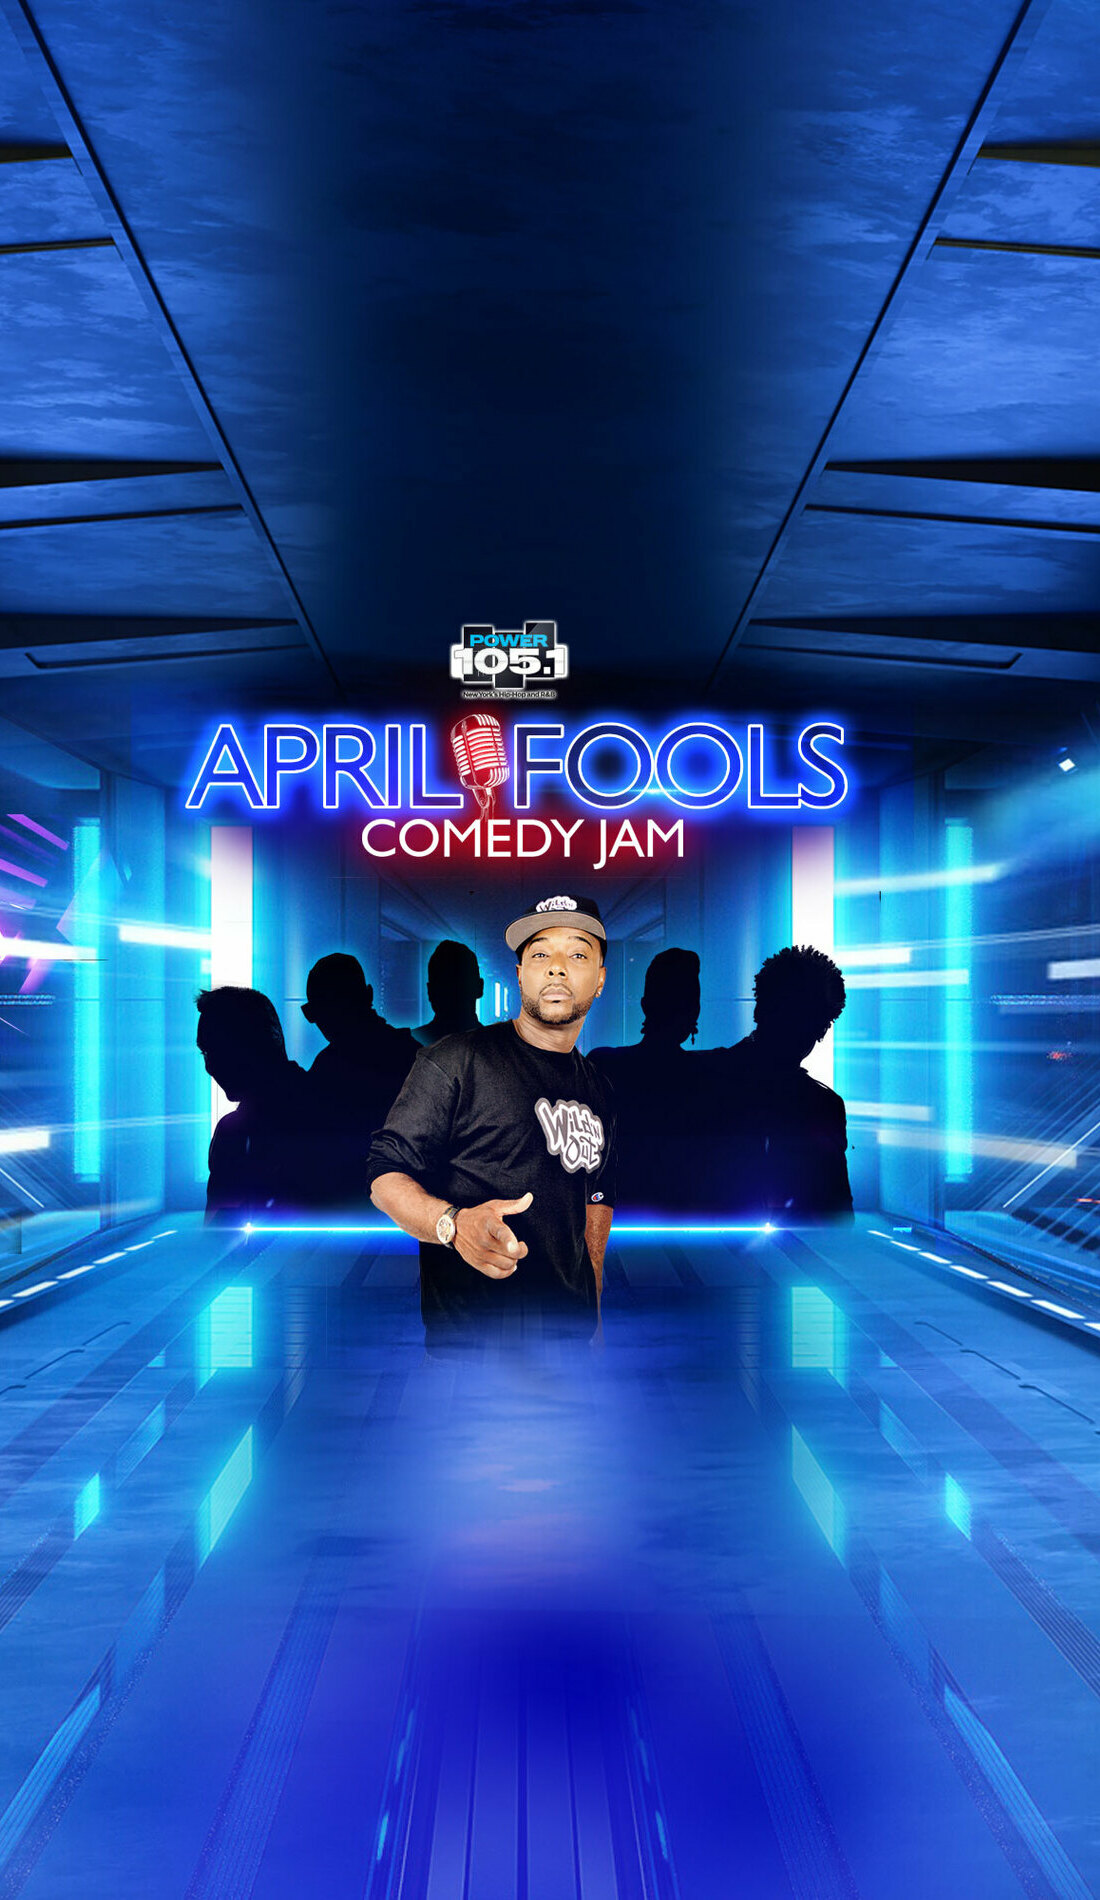 A April Fools Comedy Jam live event